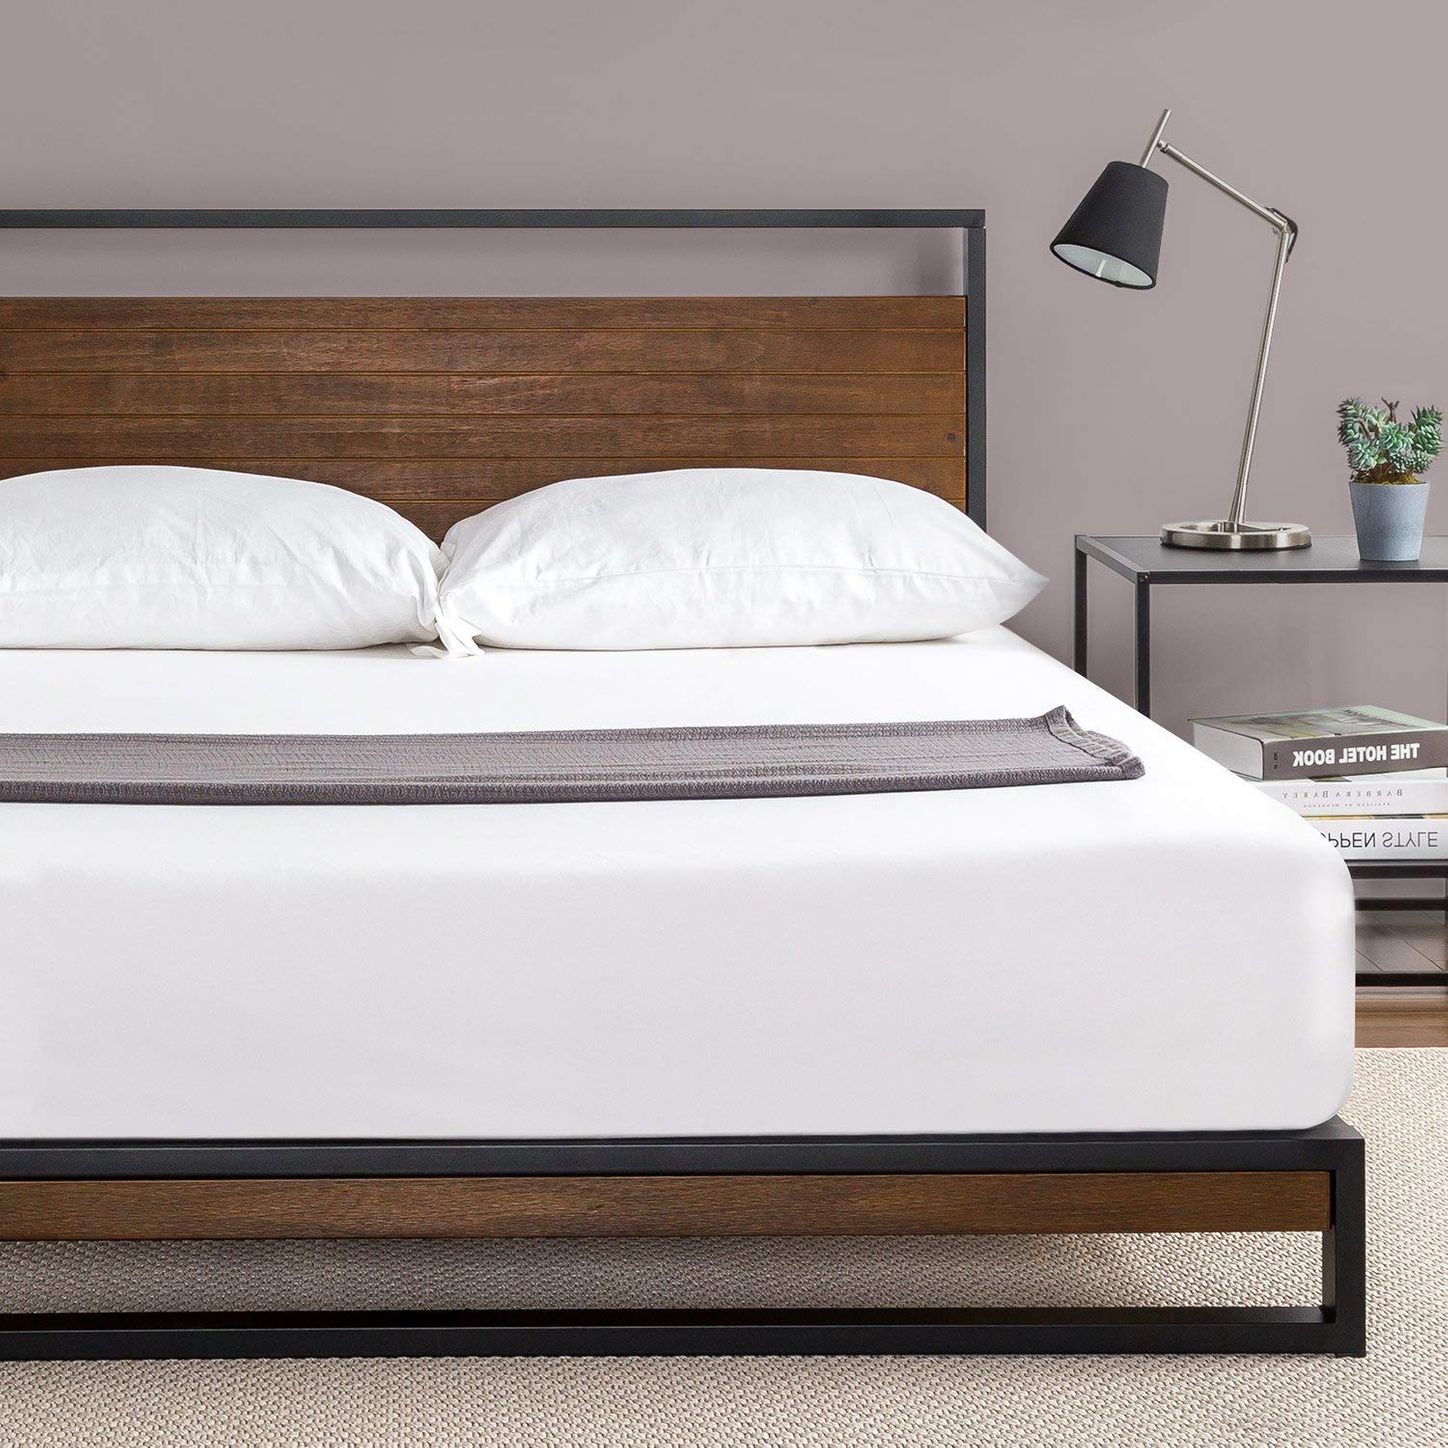 19 Best Metal Bed Frames 2020 The, King Platform Bed No Slats